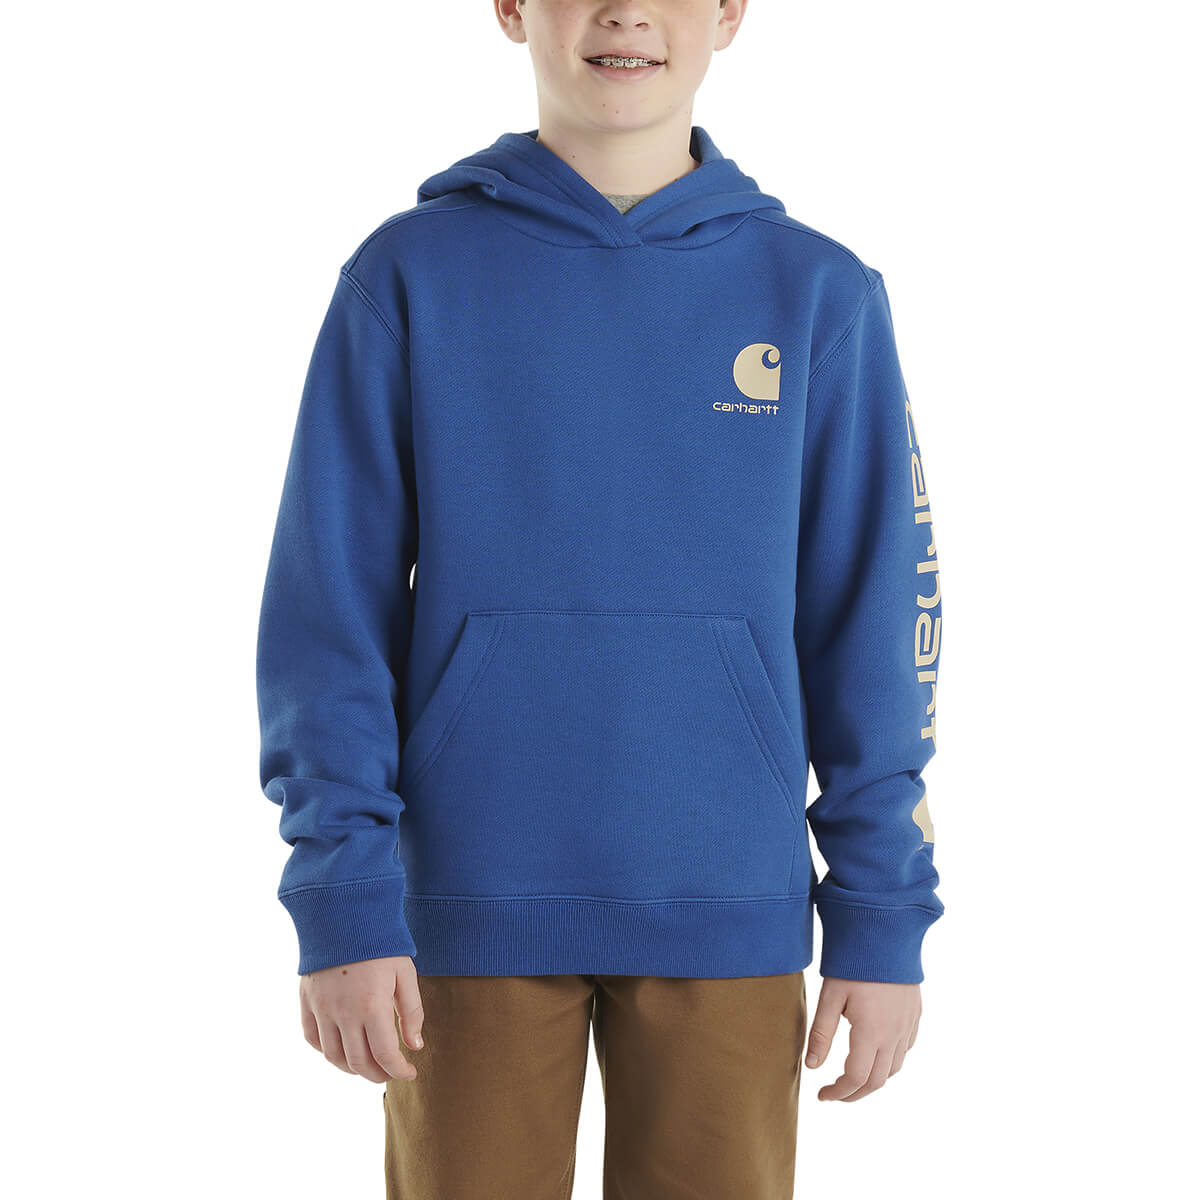 Carhartt Kid's Long Sleeve Graphic Sweatshirt - Galaxy Blue